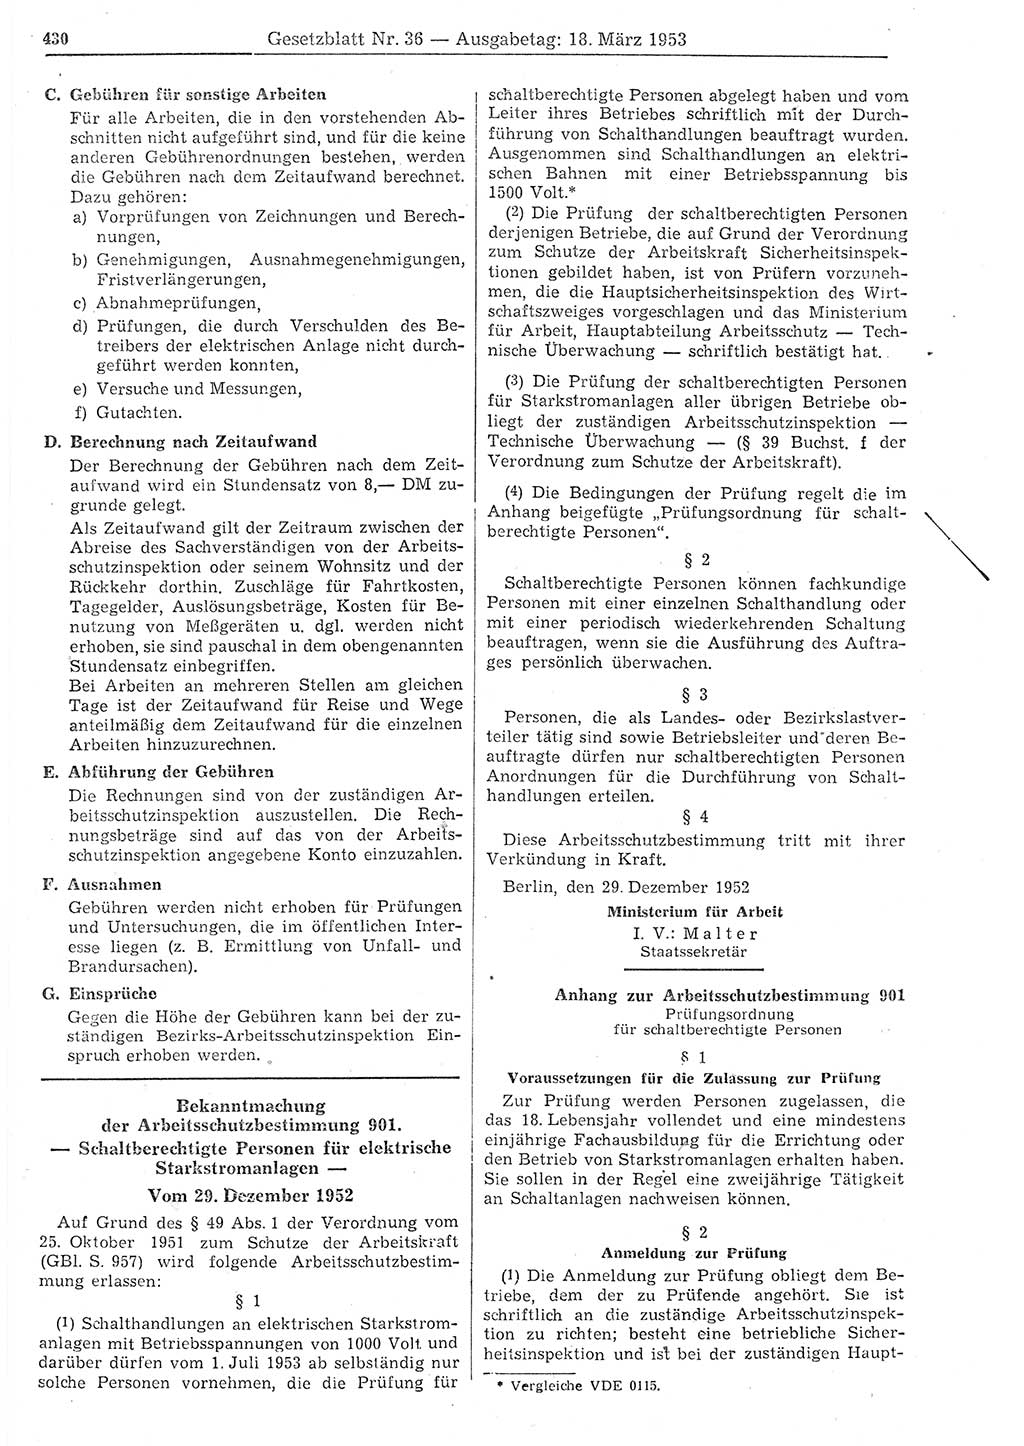 Gesetzblatt (GBl.) der Deutschen Demokratischen Republik (DDR) 1953, Seite 430 (GBl. DDR 1953, S. 430)